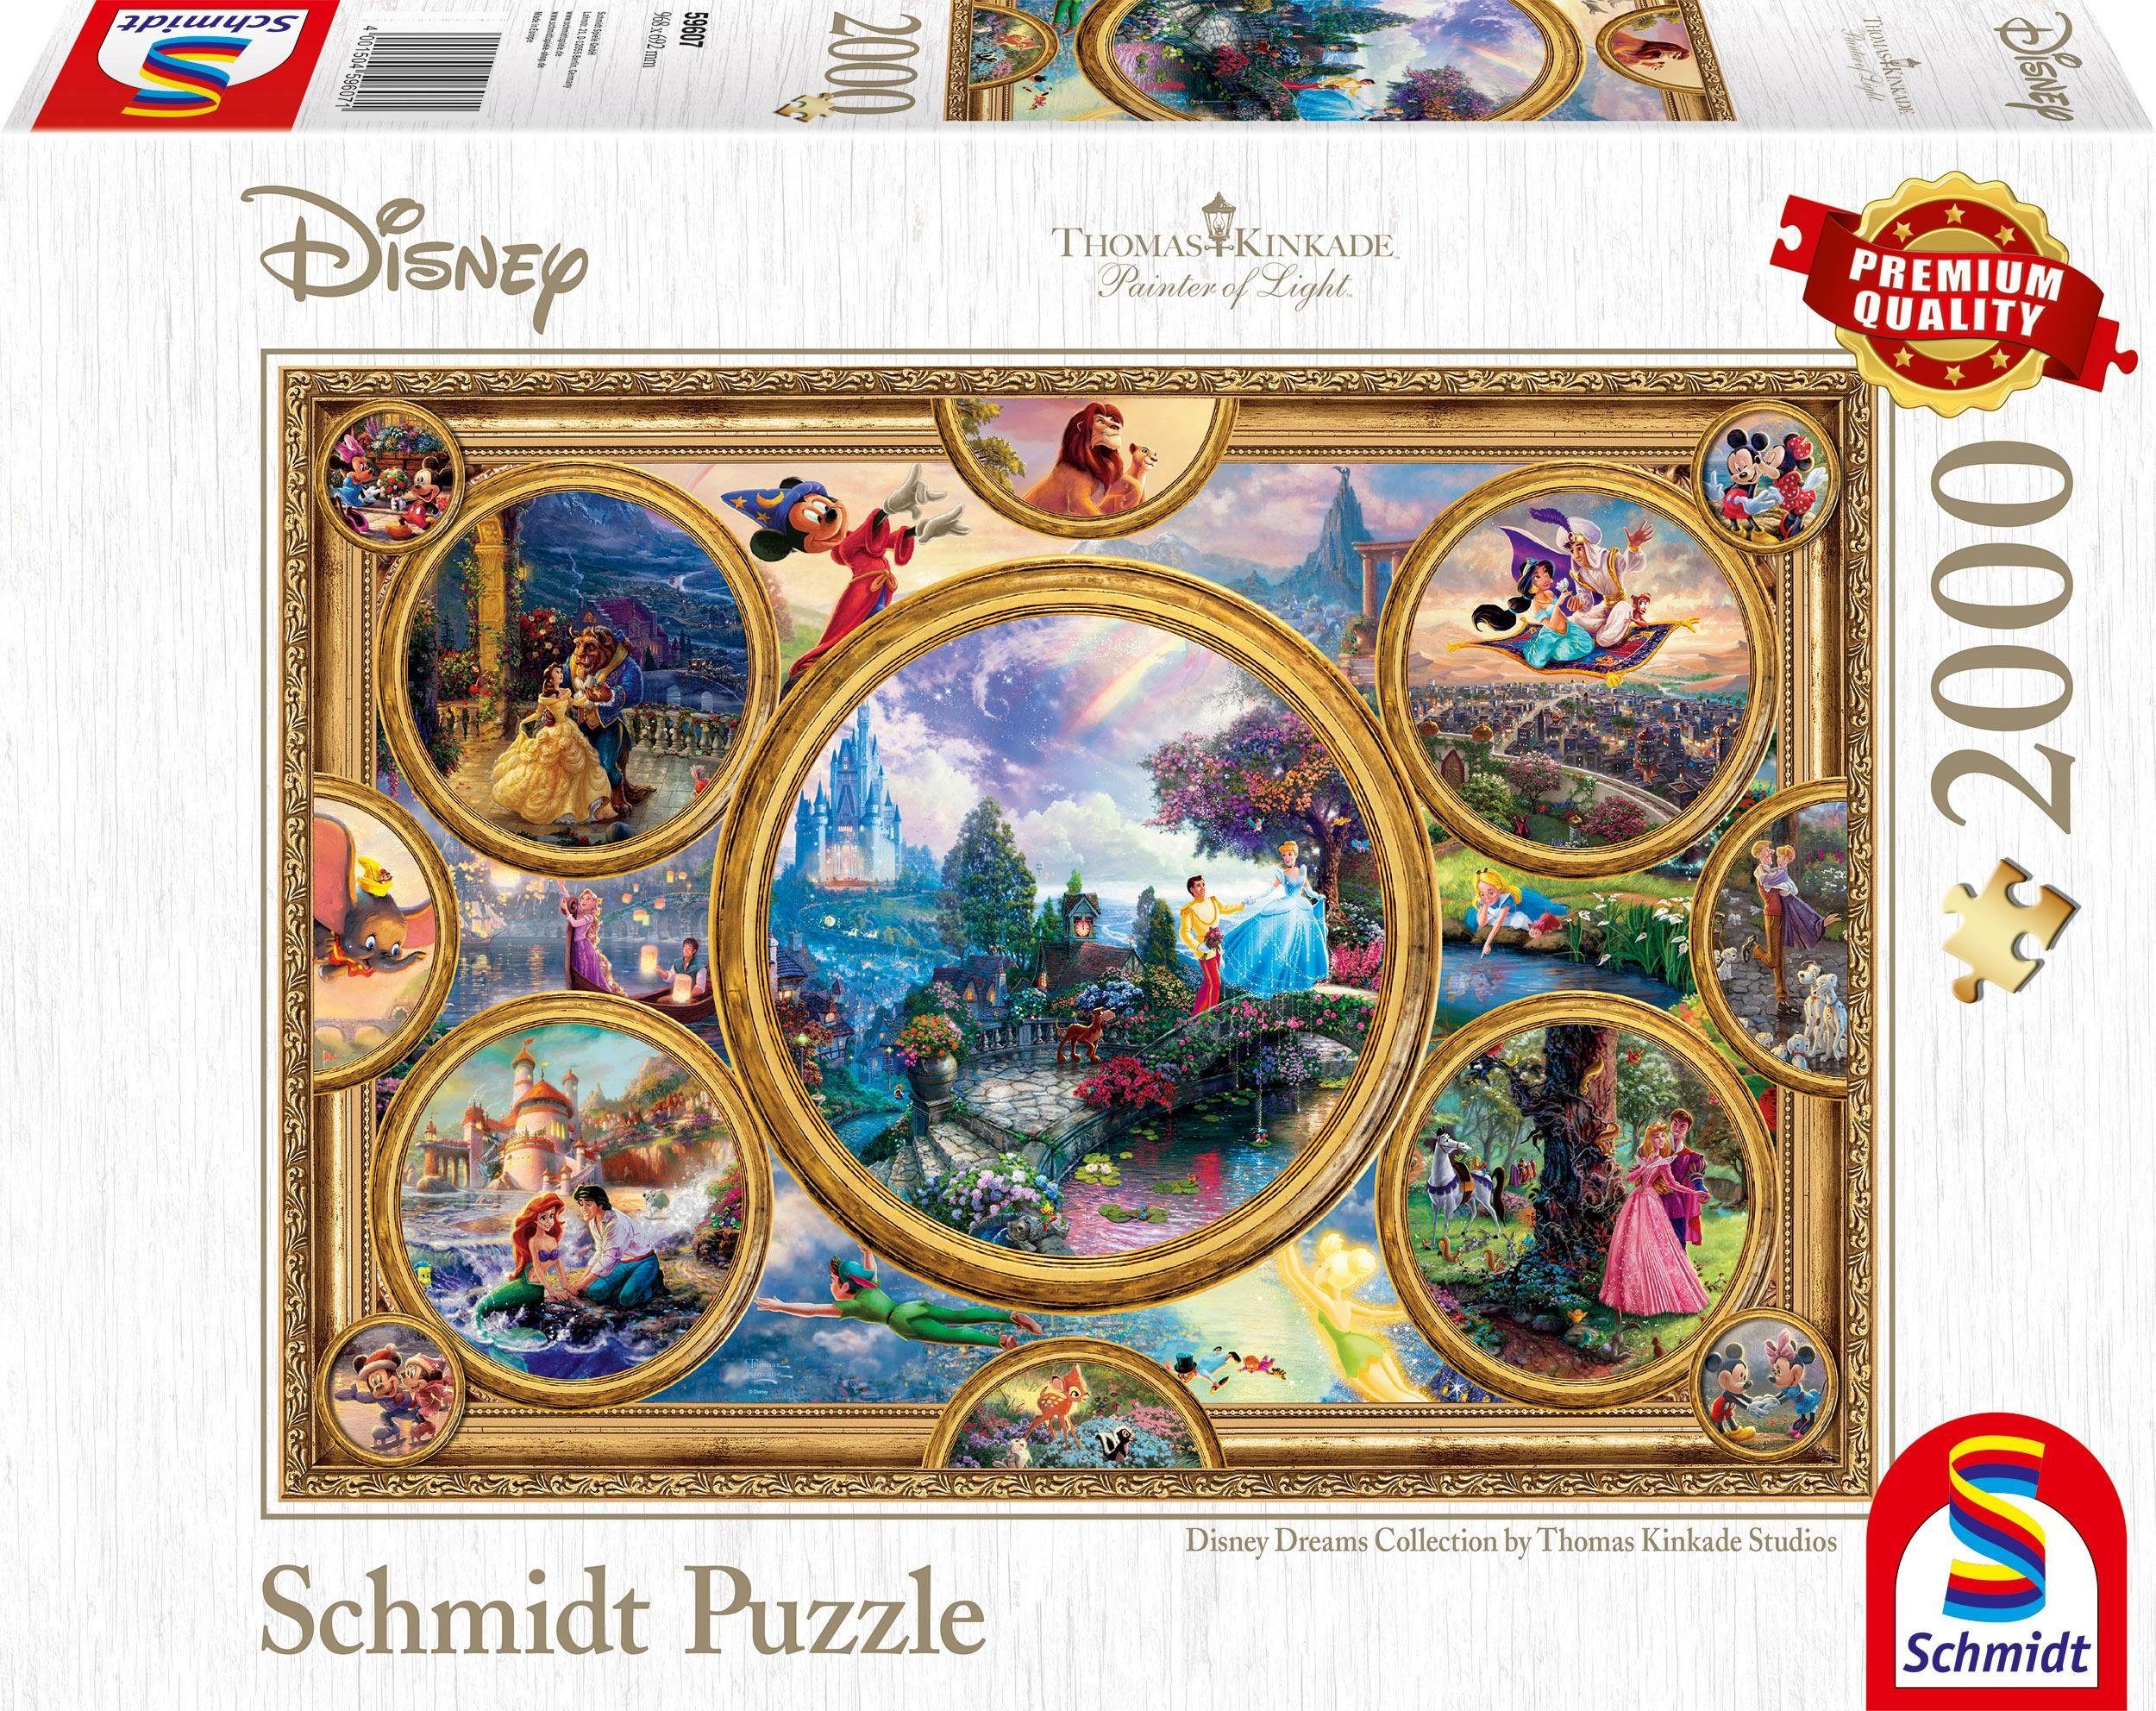 Günstige Puzzle kaufen » Kinderpuzzle & Erwachsenenpuzzle | OTTO